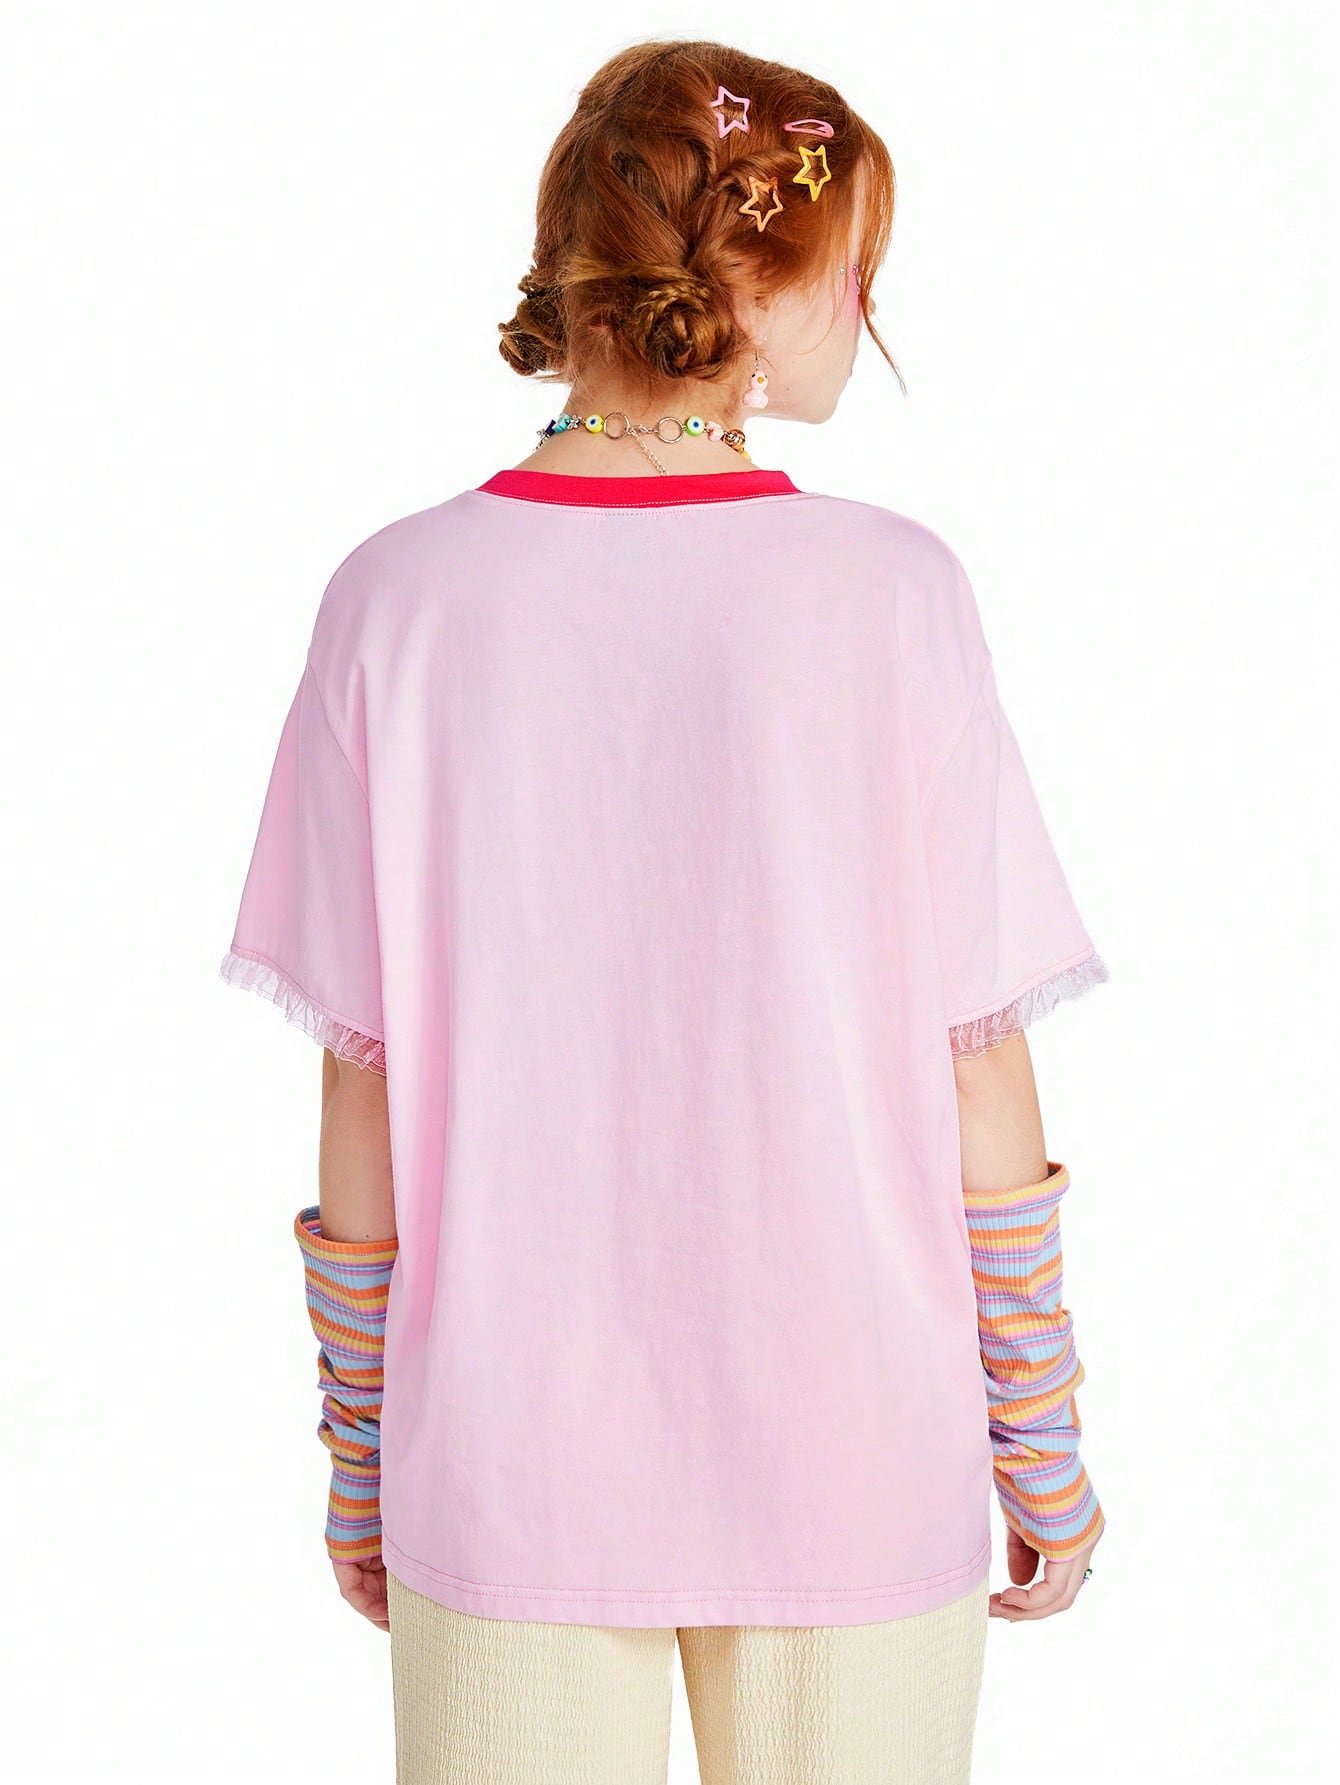 キッドコア Tシャツ コントラストカラー レターグラフィック 迷彩柄 トップス 女子カジュアル 可愛い